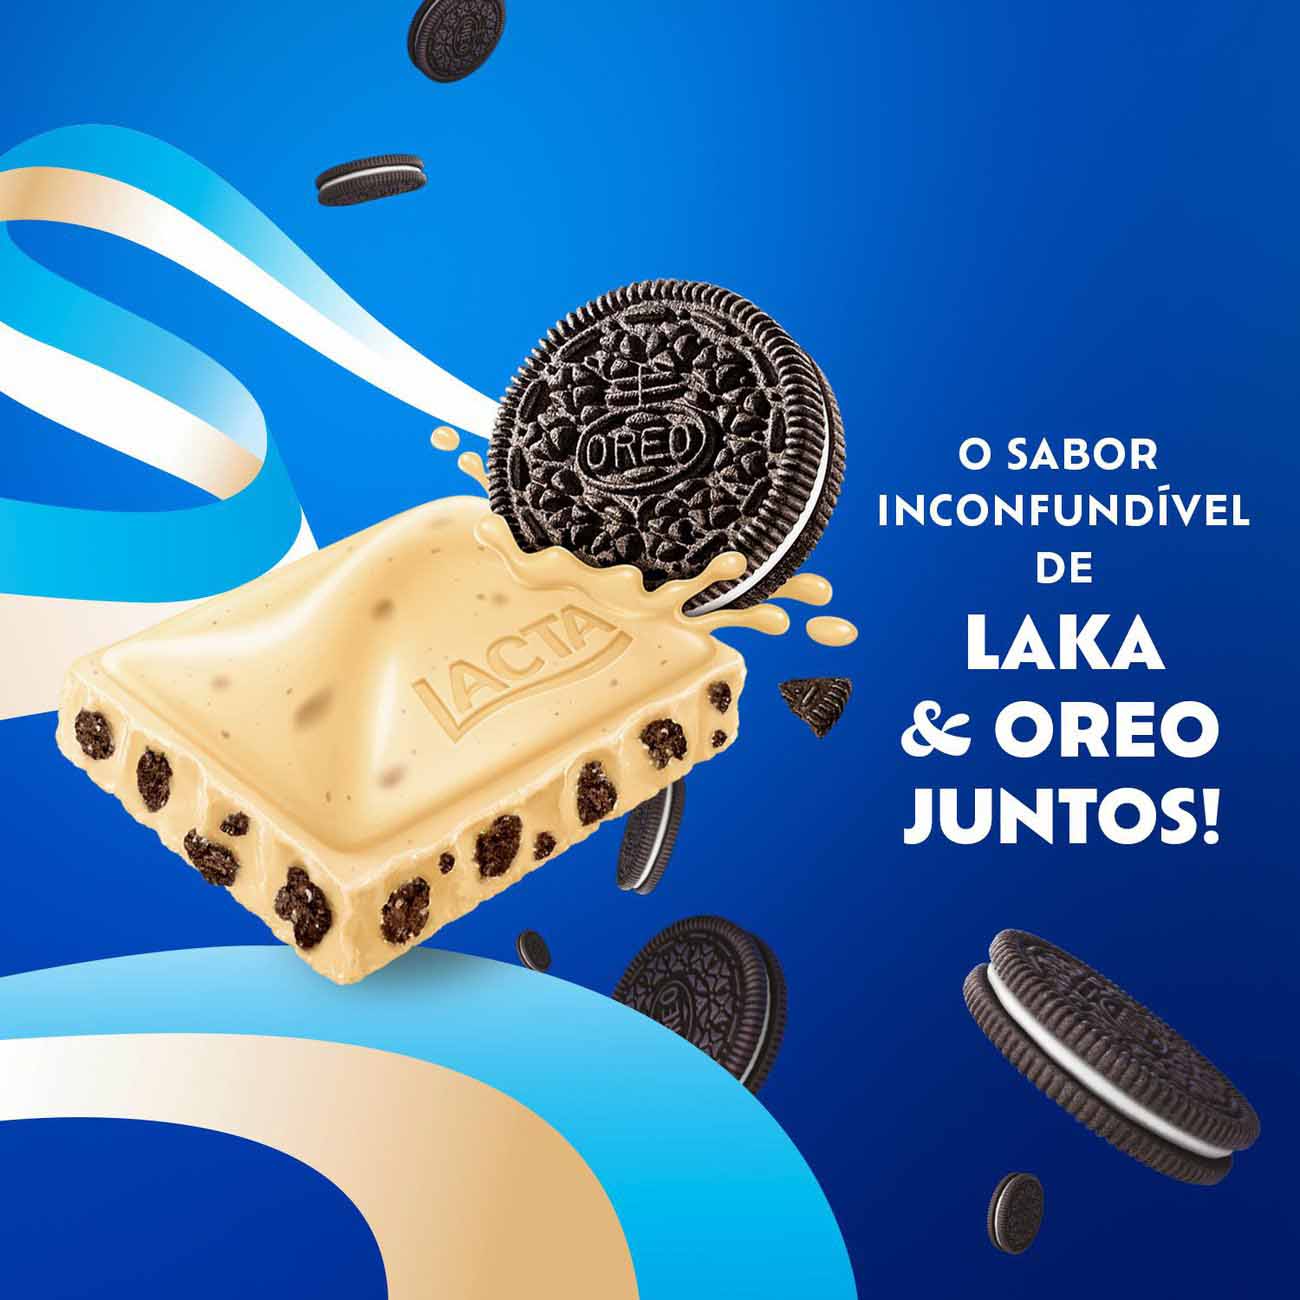 Chocolate Lacta Laka Oreo display com 20 unidades de 20gr